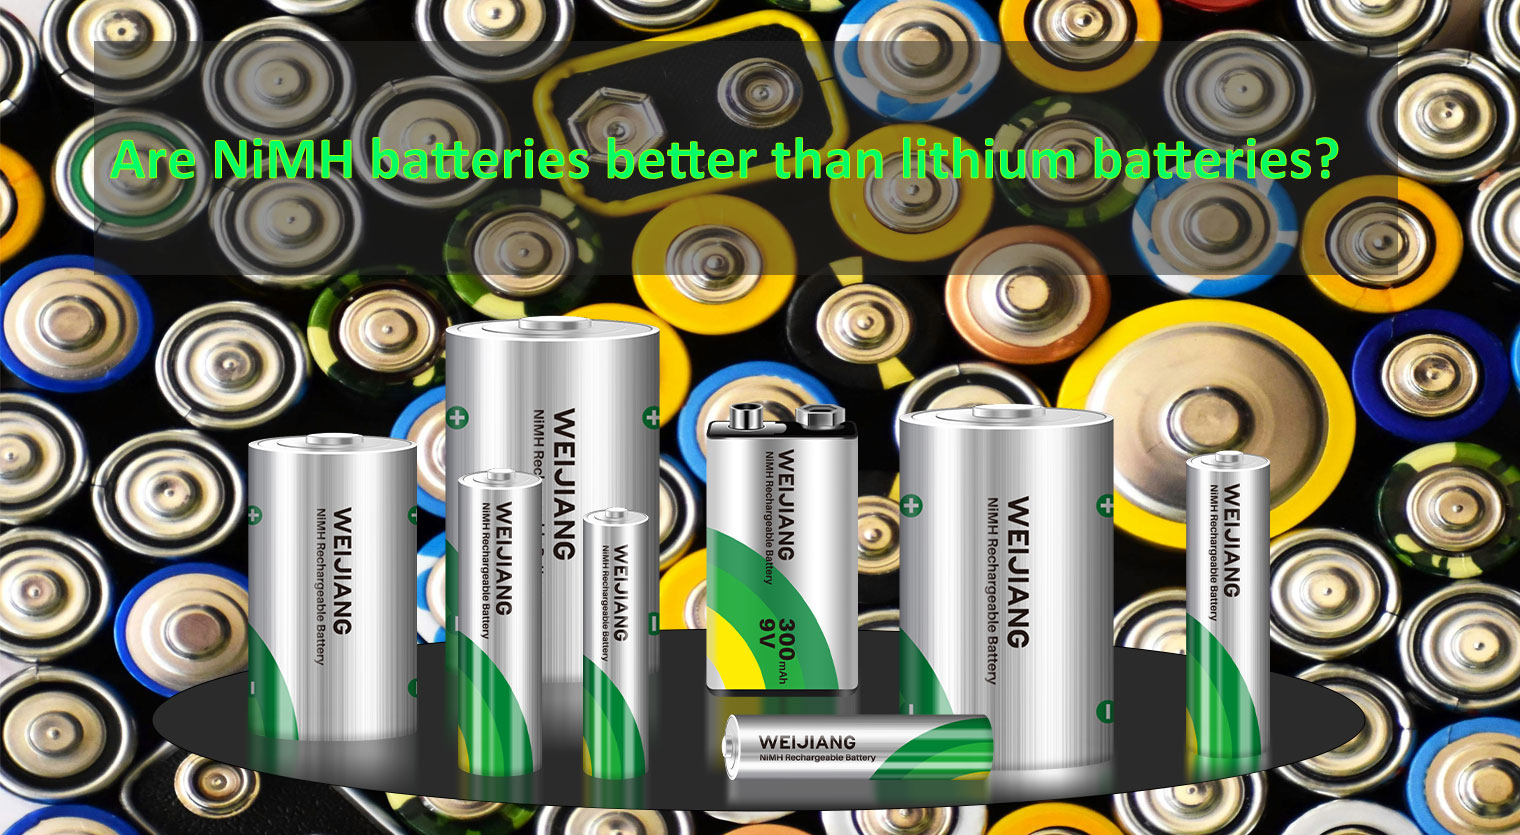 Akumulatory Are-NiMH są lepsze od akumulatorów litowych